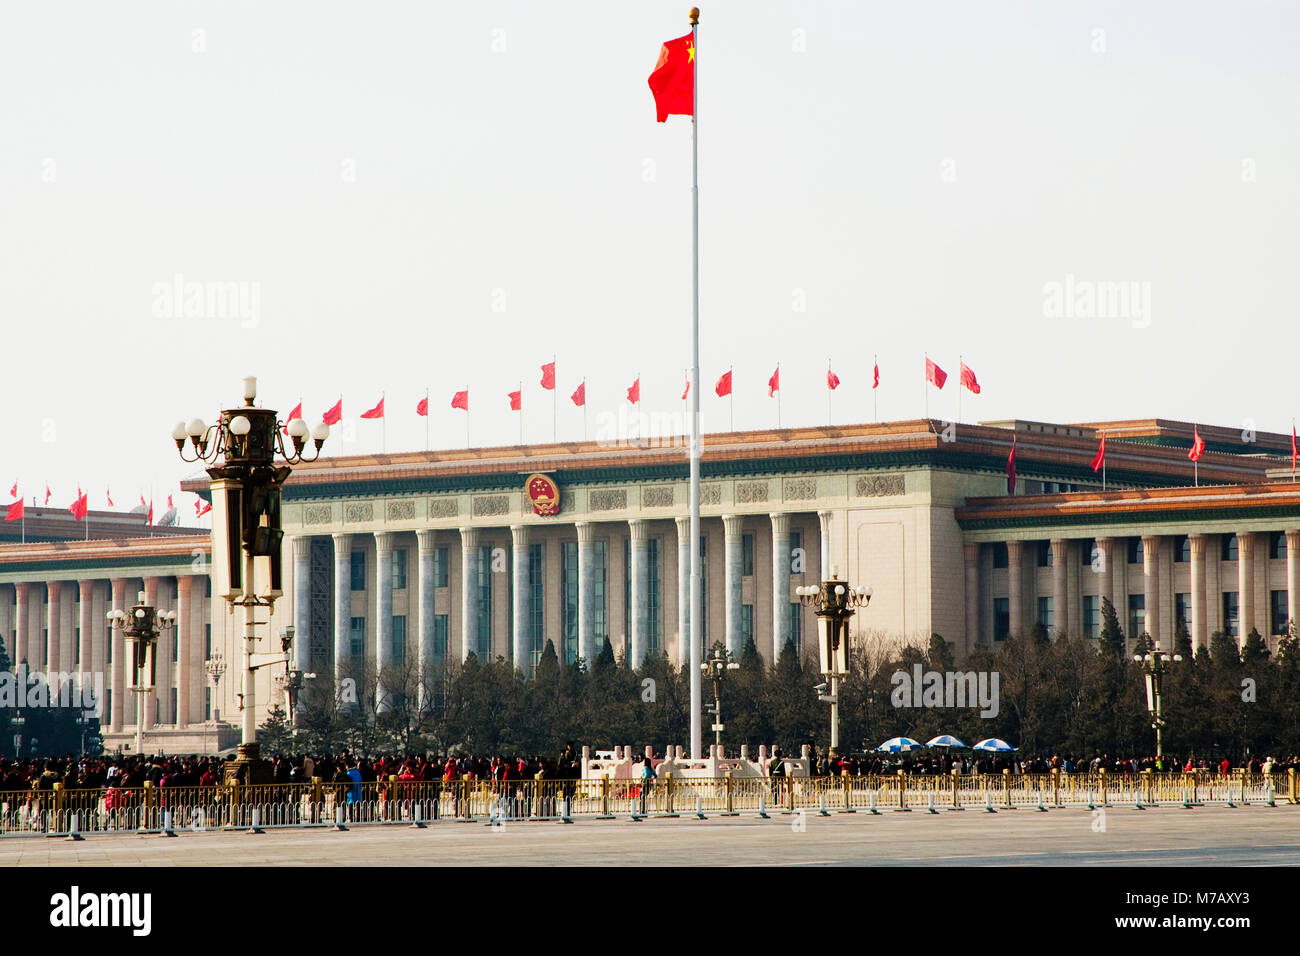 Facciata di un palazzo del governo, la Grande Sala del Popolo, Piazza Tiananmen, la Città Proibita di Pechino, Cina Foto Stock